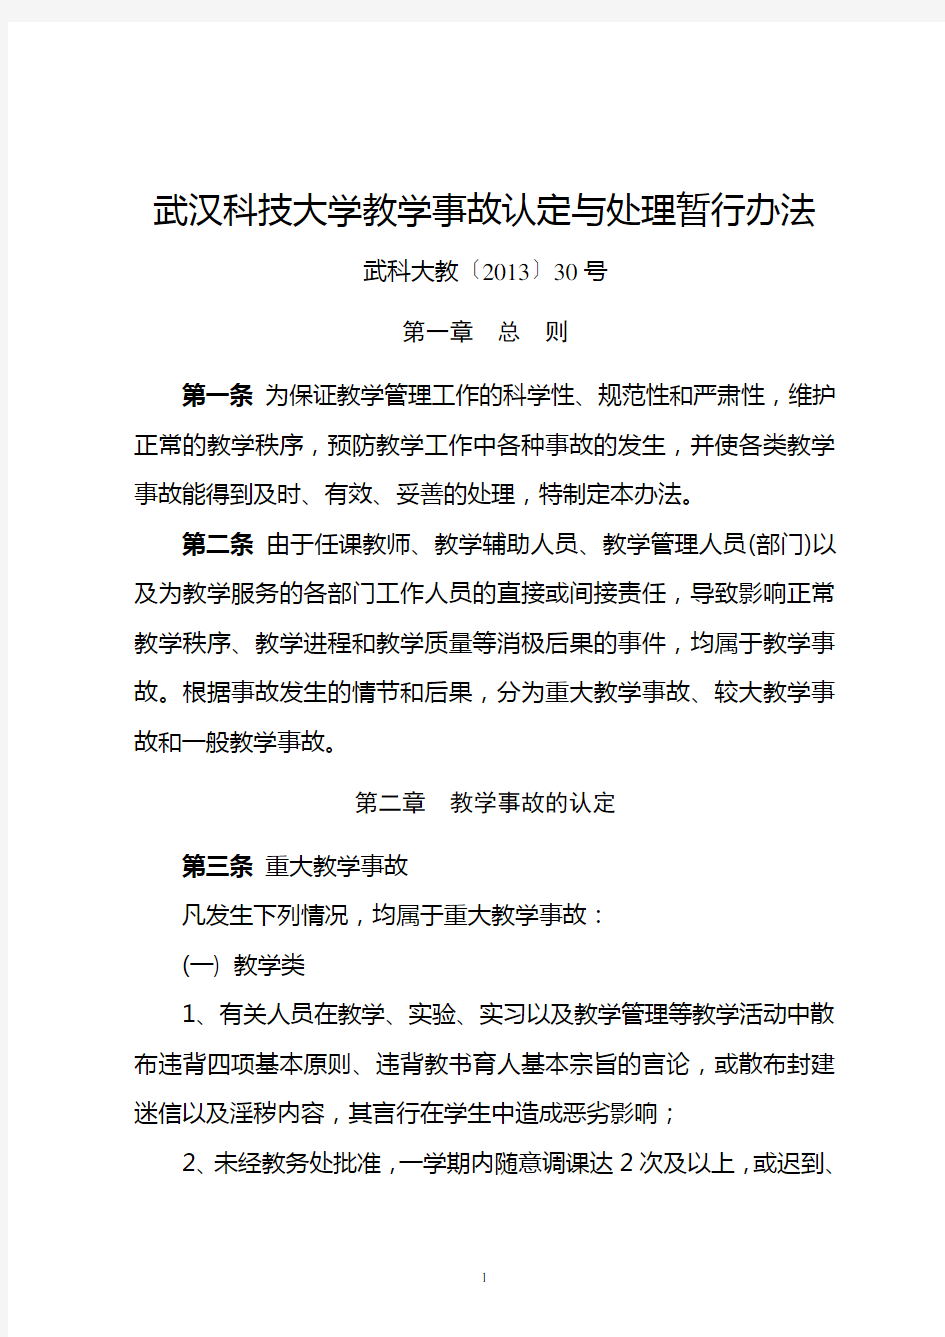 武汉科技大学教学事故认定与处理暂行办法汇编